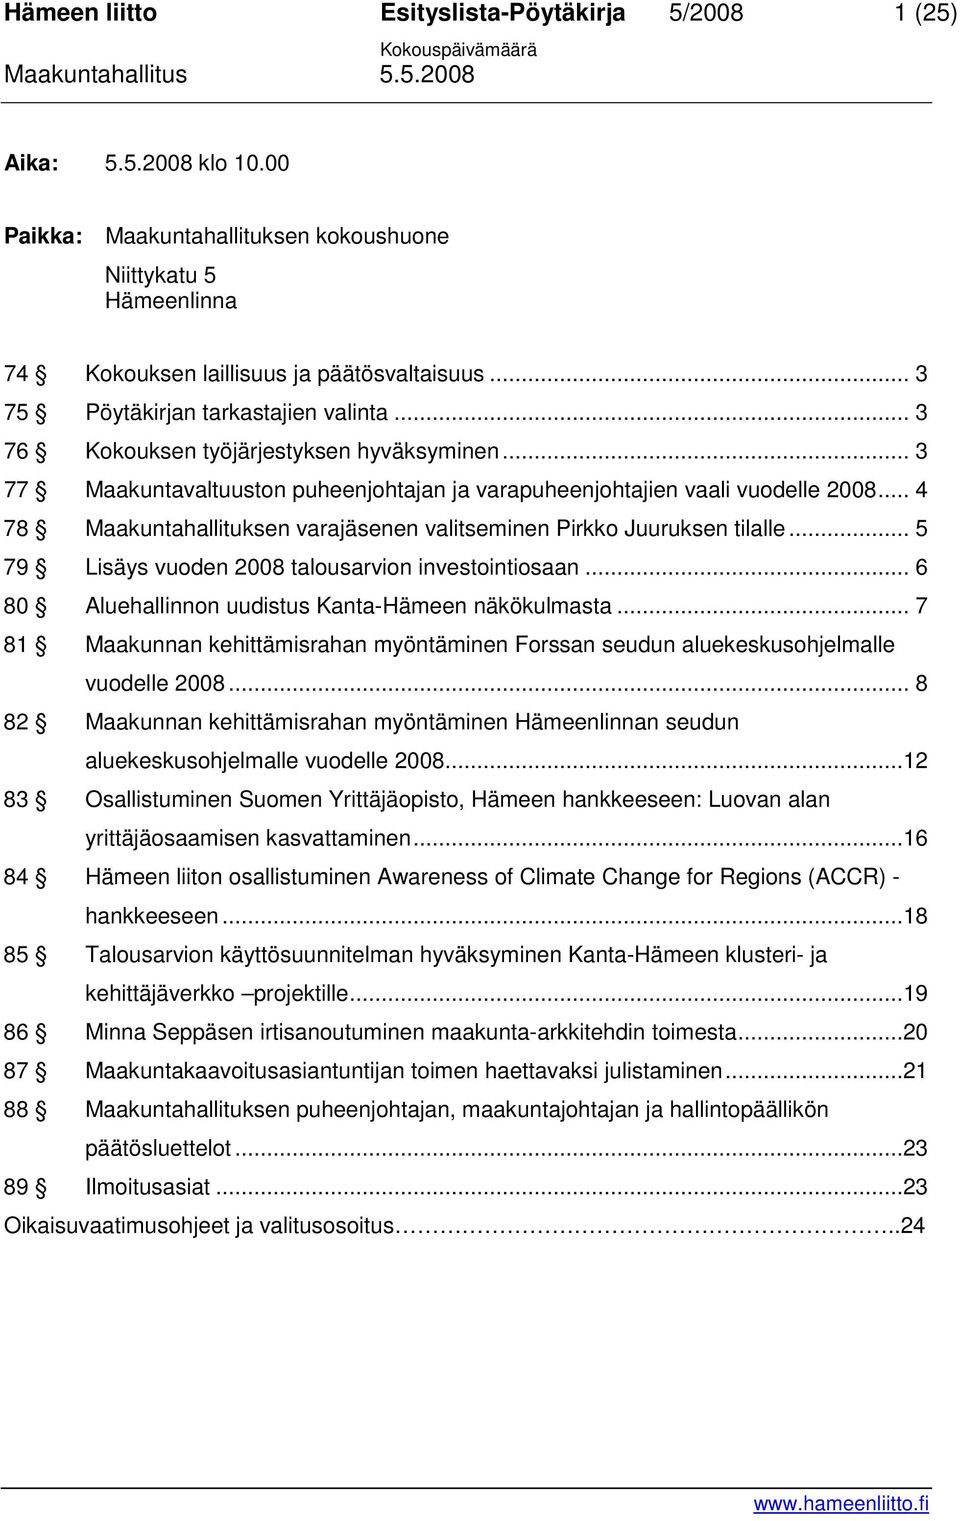 .. 4 78 Maakuntahallituksen varajäsenen valitseminen Pirkko Juuruksen tilalle... 5 79 Lisäys vuoden 2008 talousarvion investointiosaan... 6 80 Aluehallinnon uudistus Kanta-Hämeen näkökulmasta.